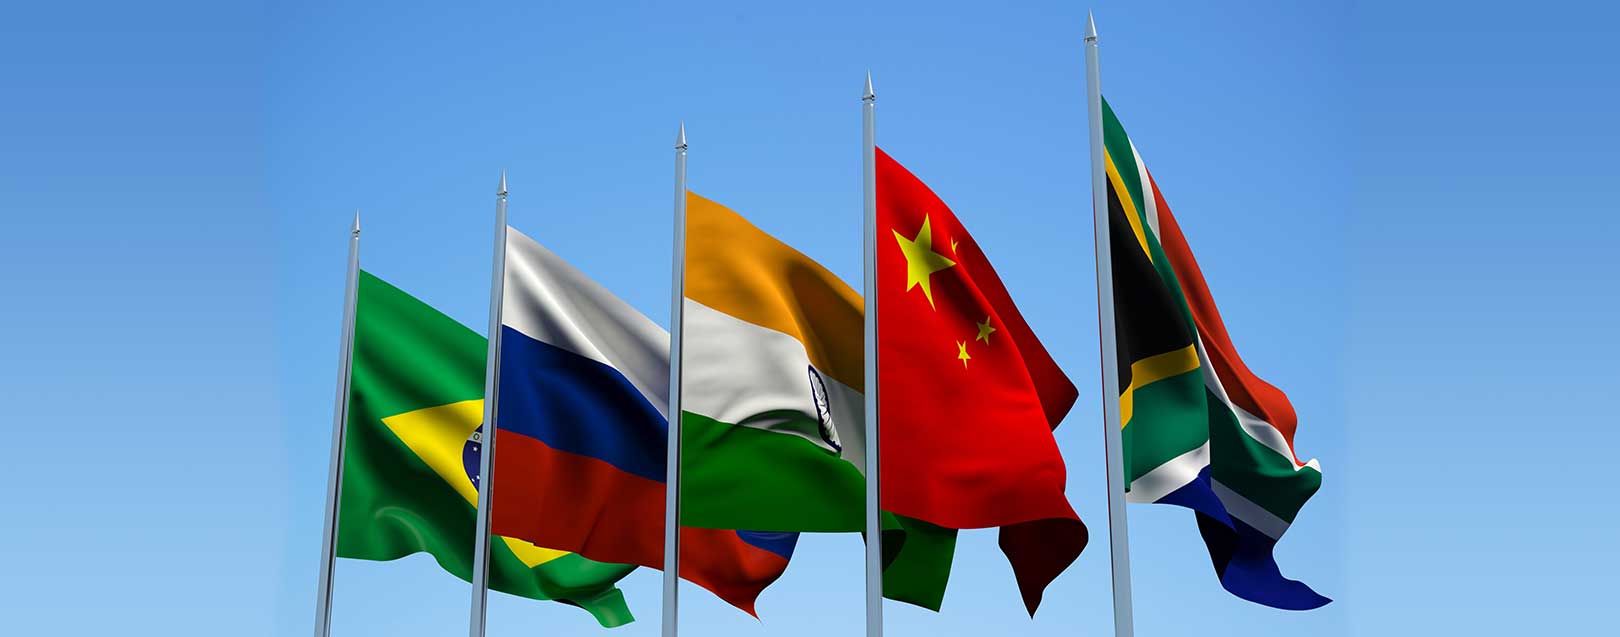 BRICS may set up credit rating agency soon